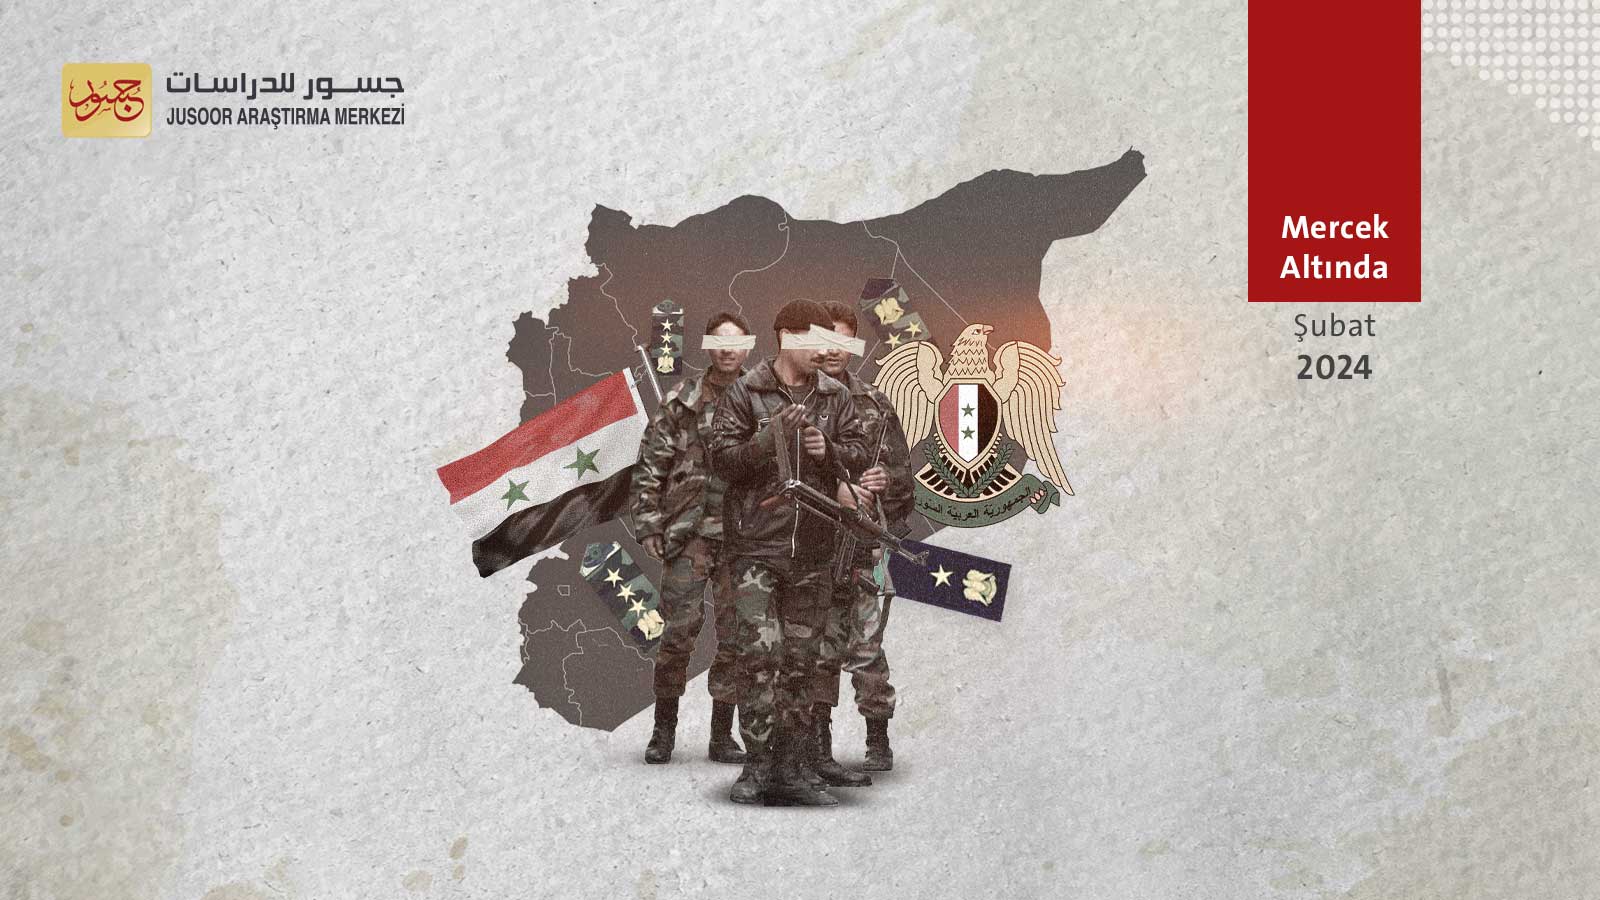 Suriye rejimi güvenlik sistemini yeniden yapılandırıyor. Mesajlar ve İşaretler